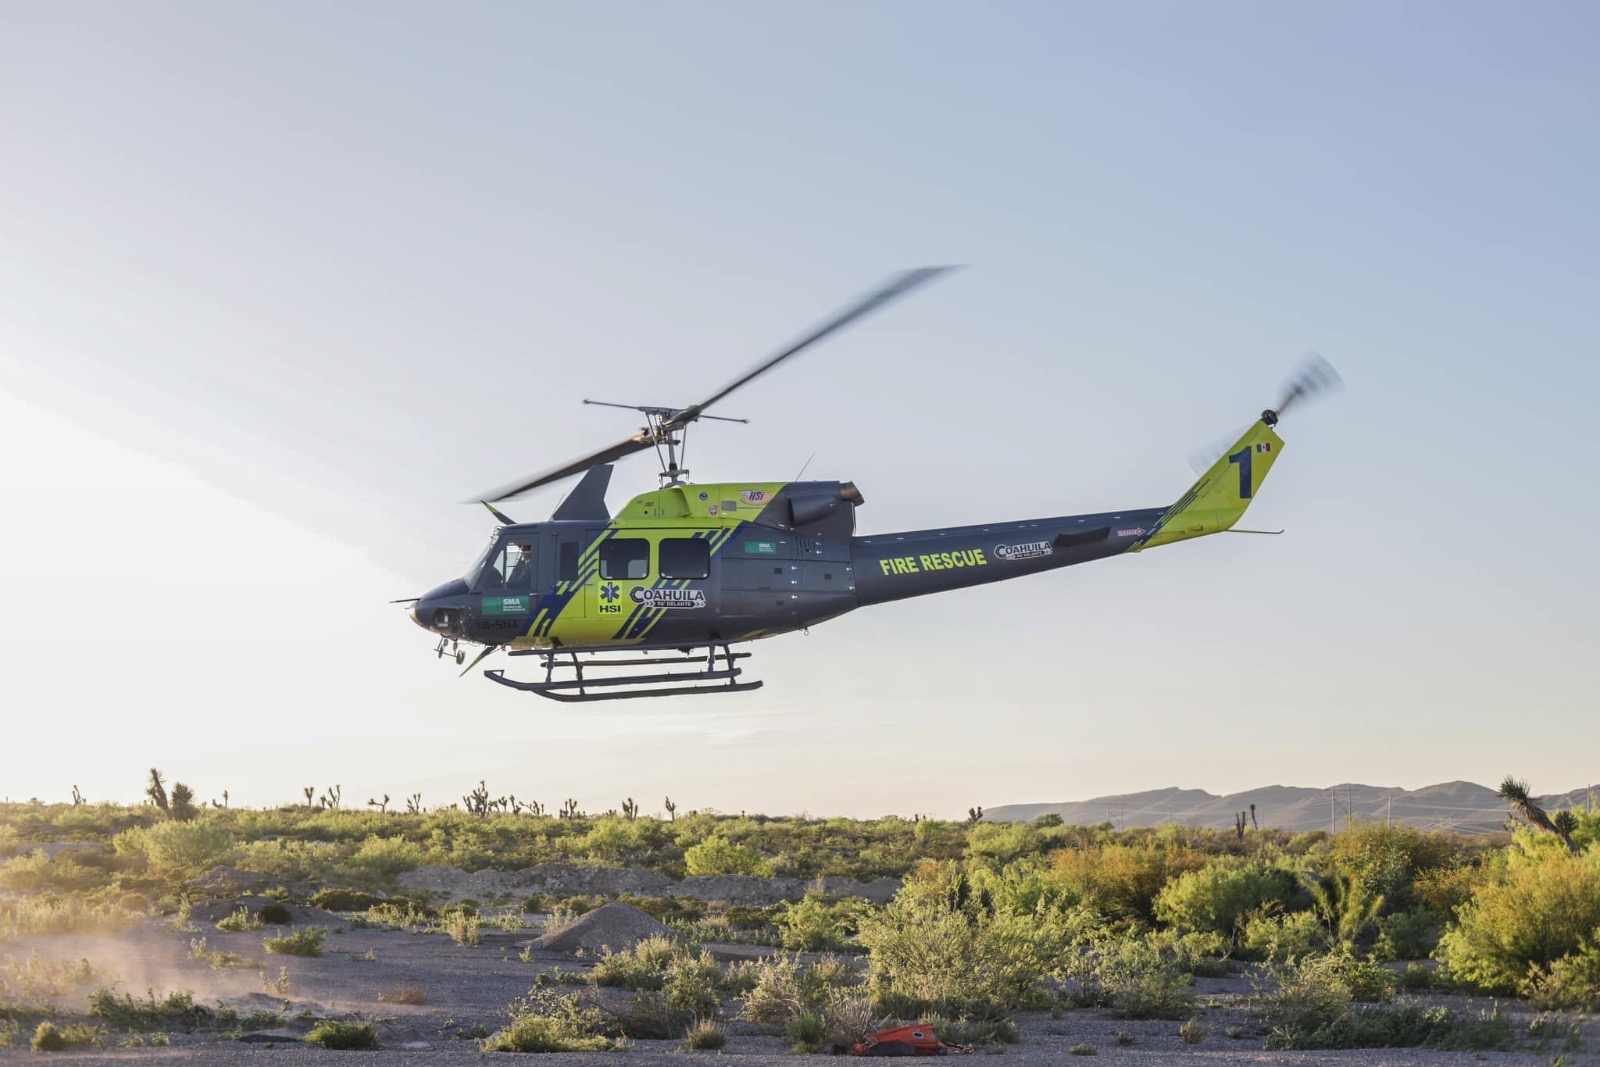 Aceleran labores de extinción de incendio en sierra de Parras con helicóptero